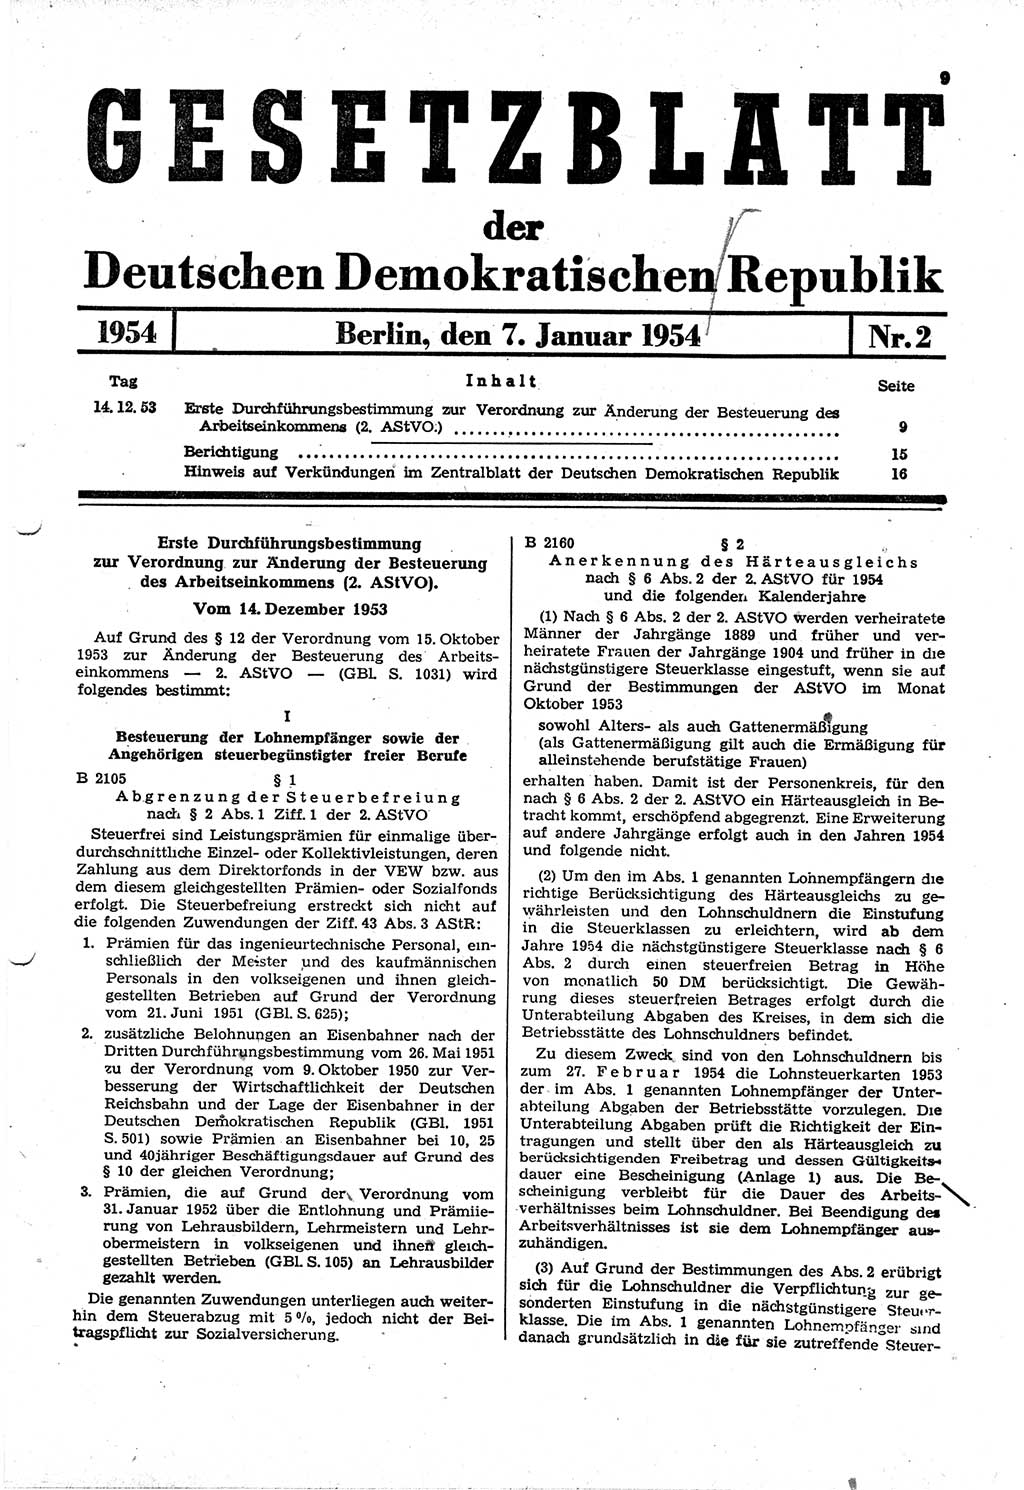 Gesetzblatt (GBl.) der Deutschen Demokratischen Republik (DDR) 1954, Seite 9 (GBl. DDR 1954, S. 9)